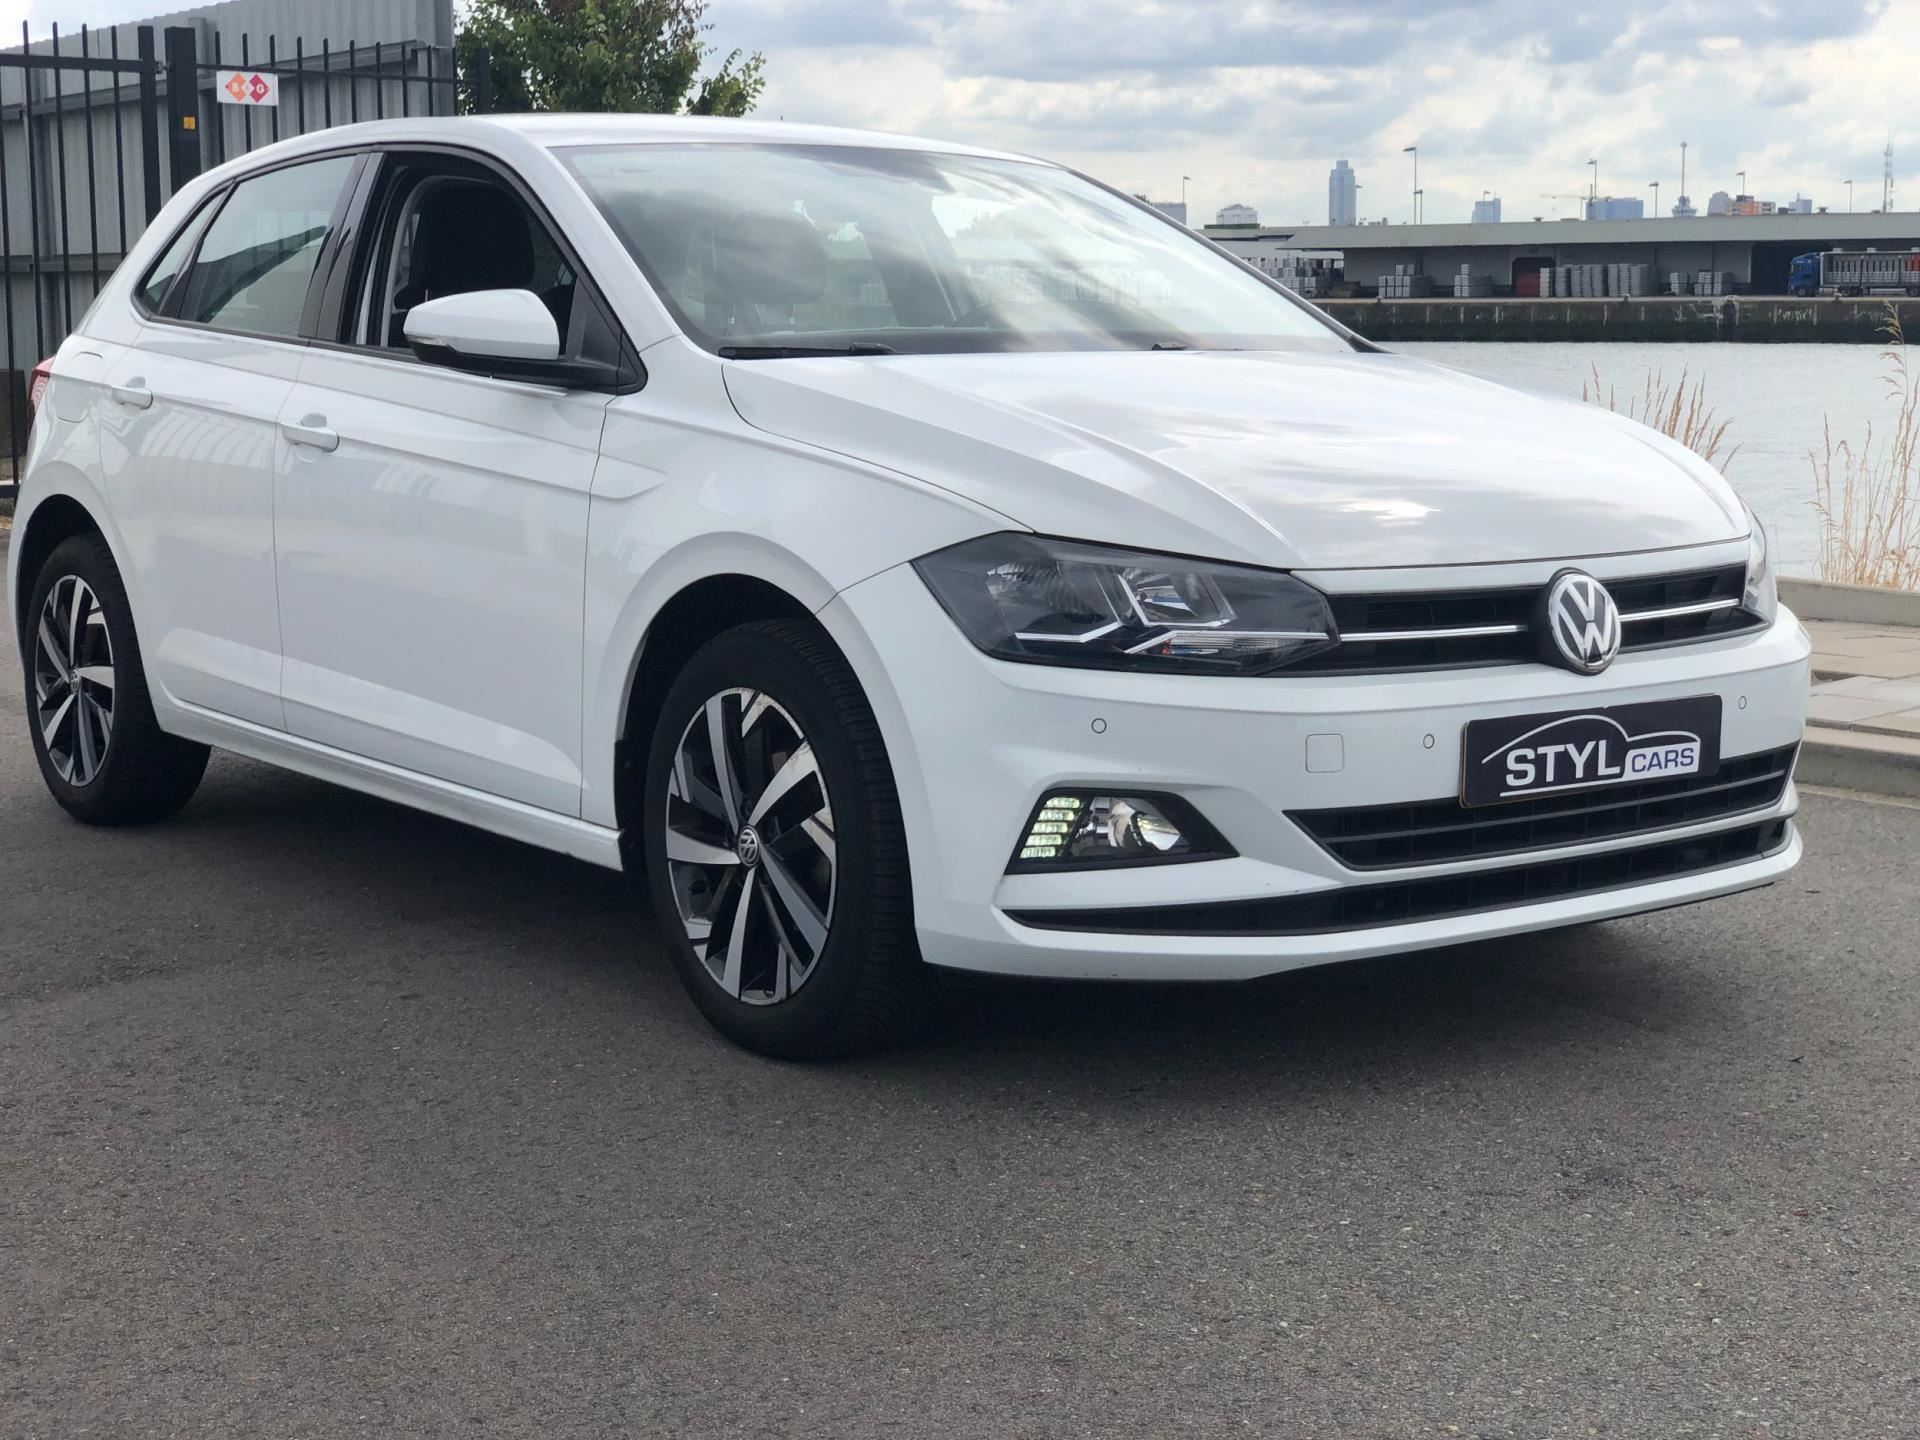 Show Auto Mall Teresina - Volkswagen - Polo - MF 1.6 - 2019 ✔️ Ar  condicionado ✔️ Banco com regulagem de altura ✔️ Desembaçador traseiro ✔️  Encosto de cabeça traseiro ✔️ Farol